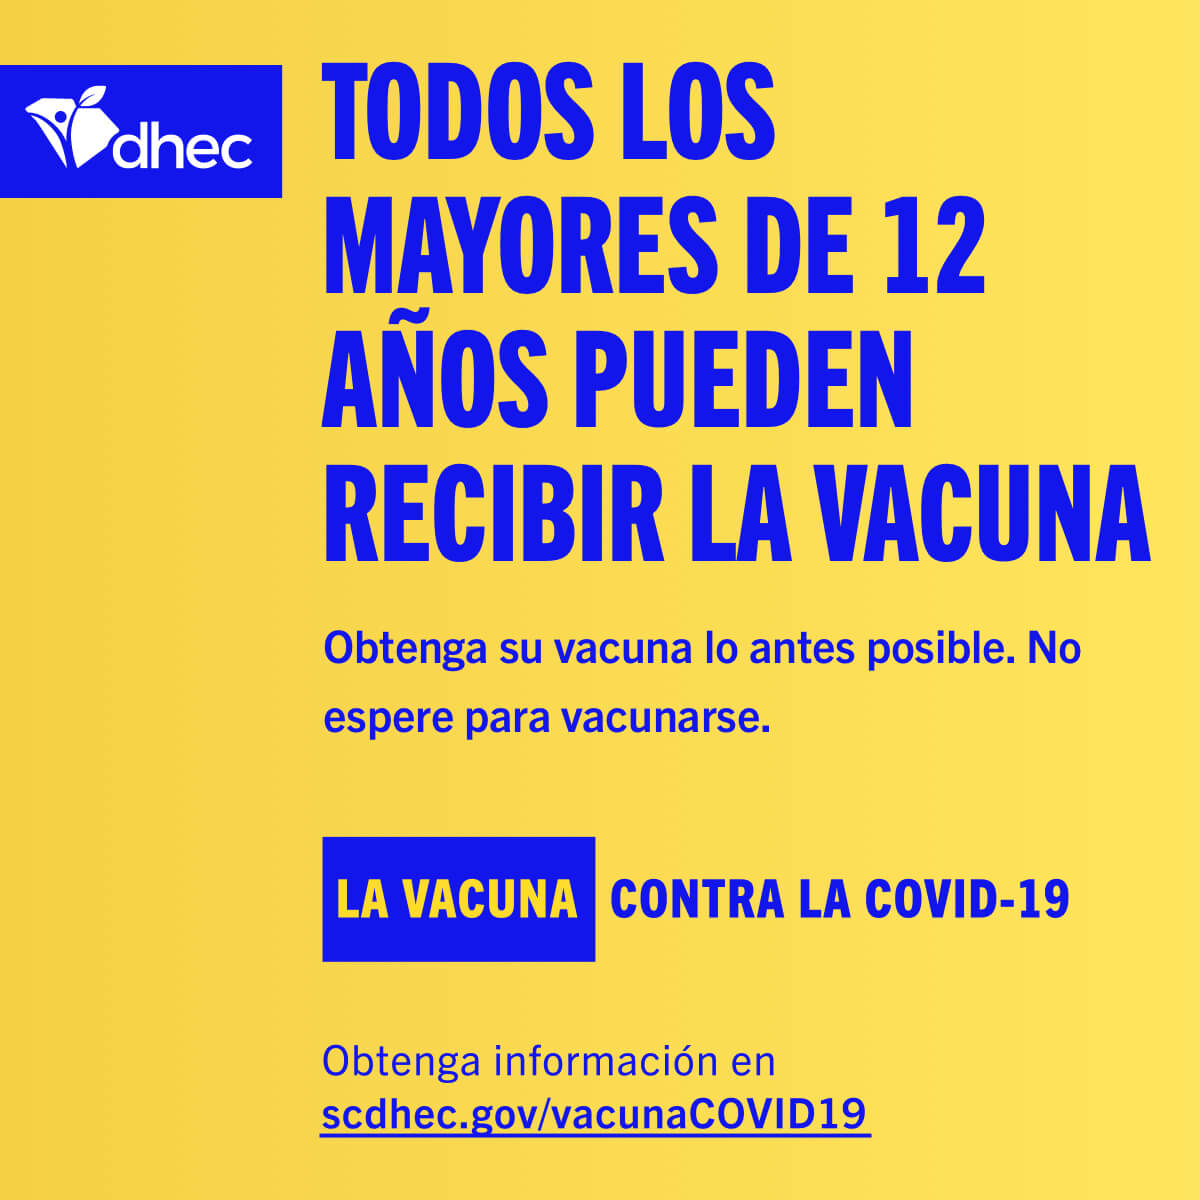 Todos los mayores de 12 anos pueden recibir la vacuna.